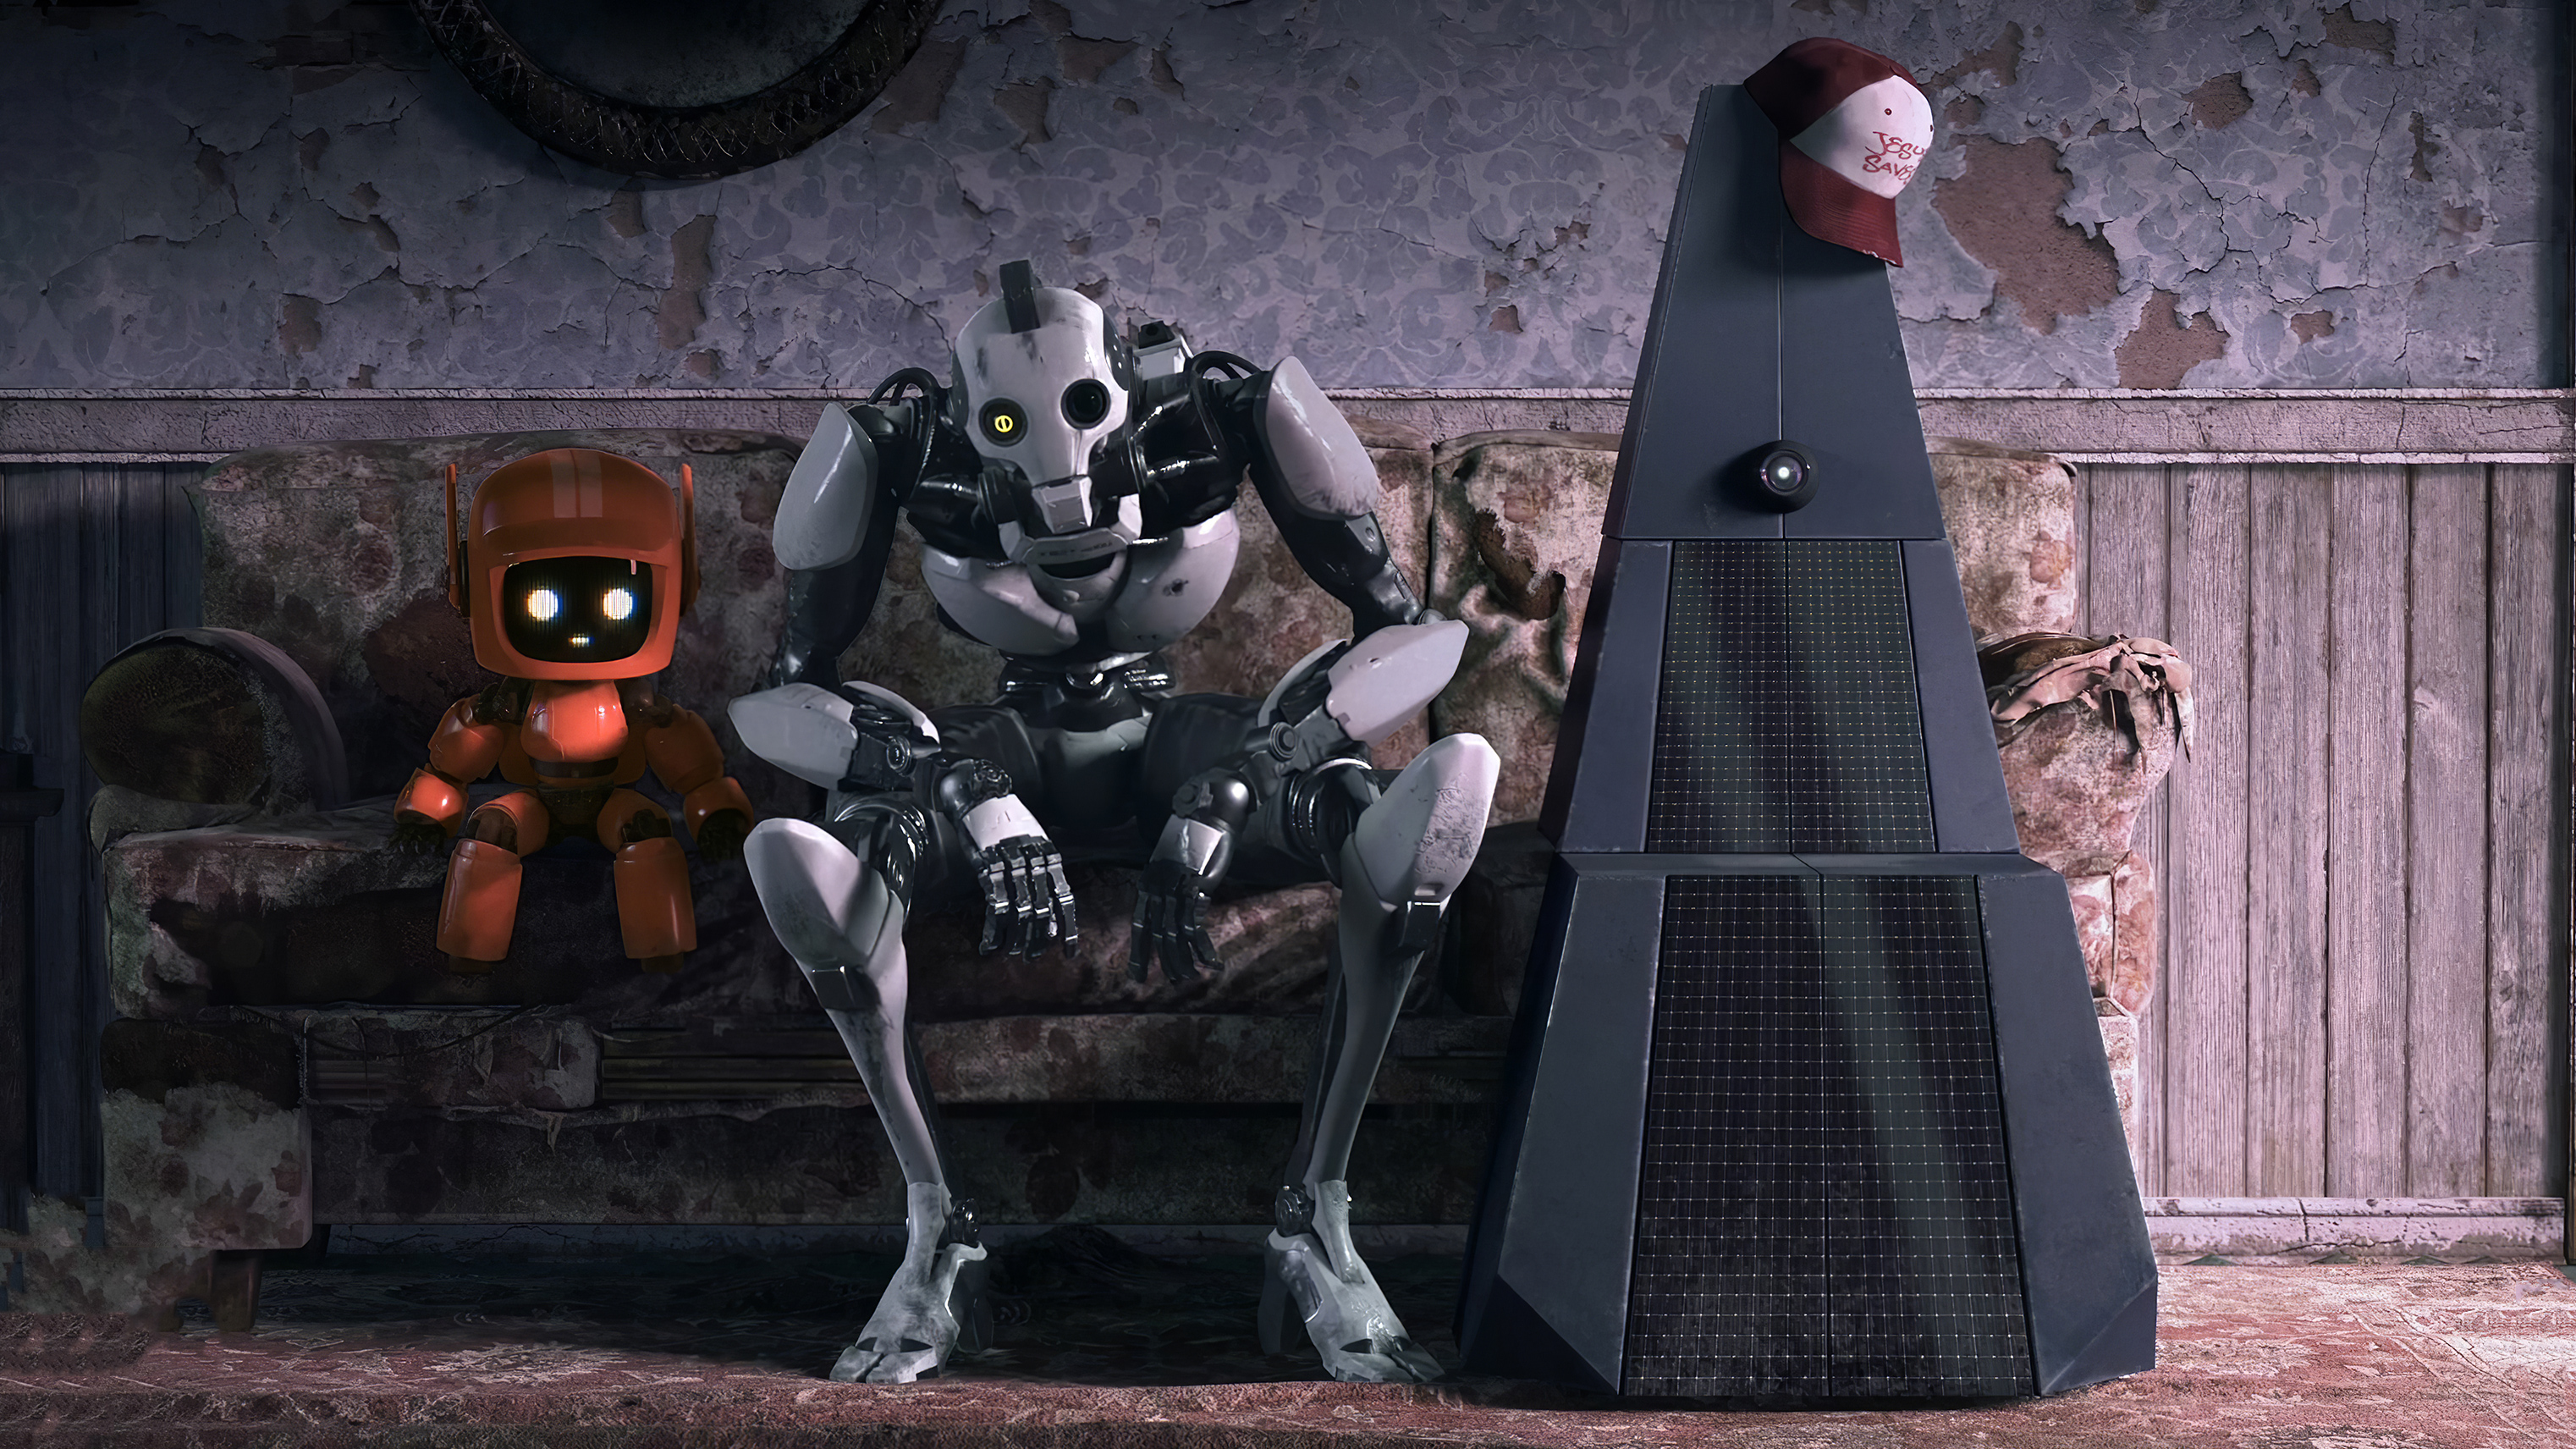 xbot 4000 (love death & robots), tv show, love death & robots, k vrc (love death & robots)